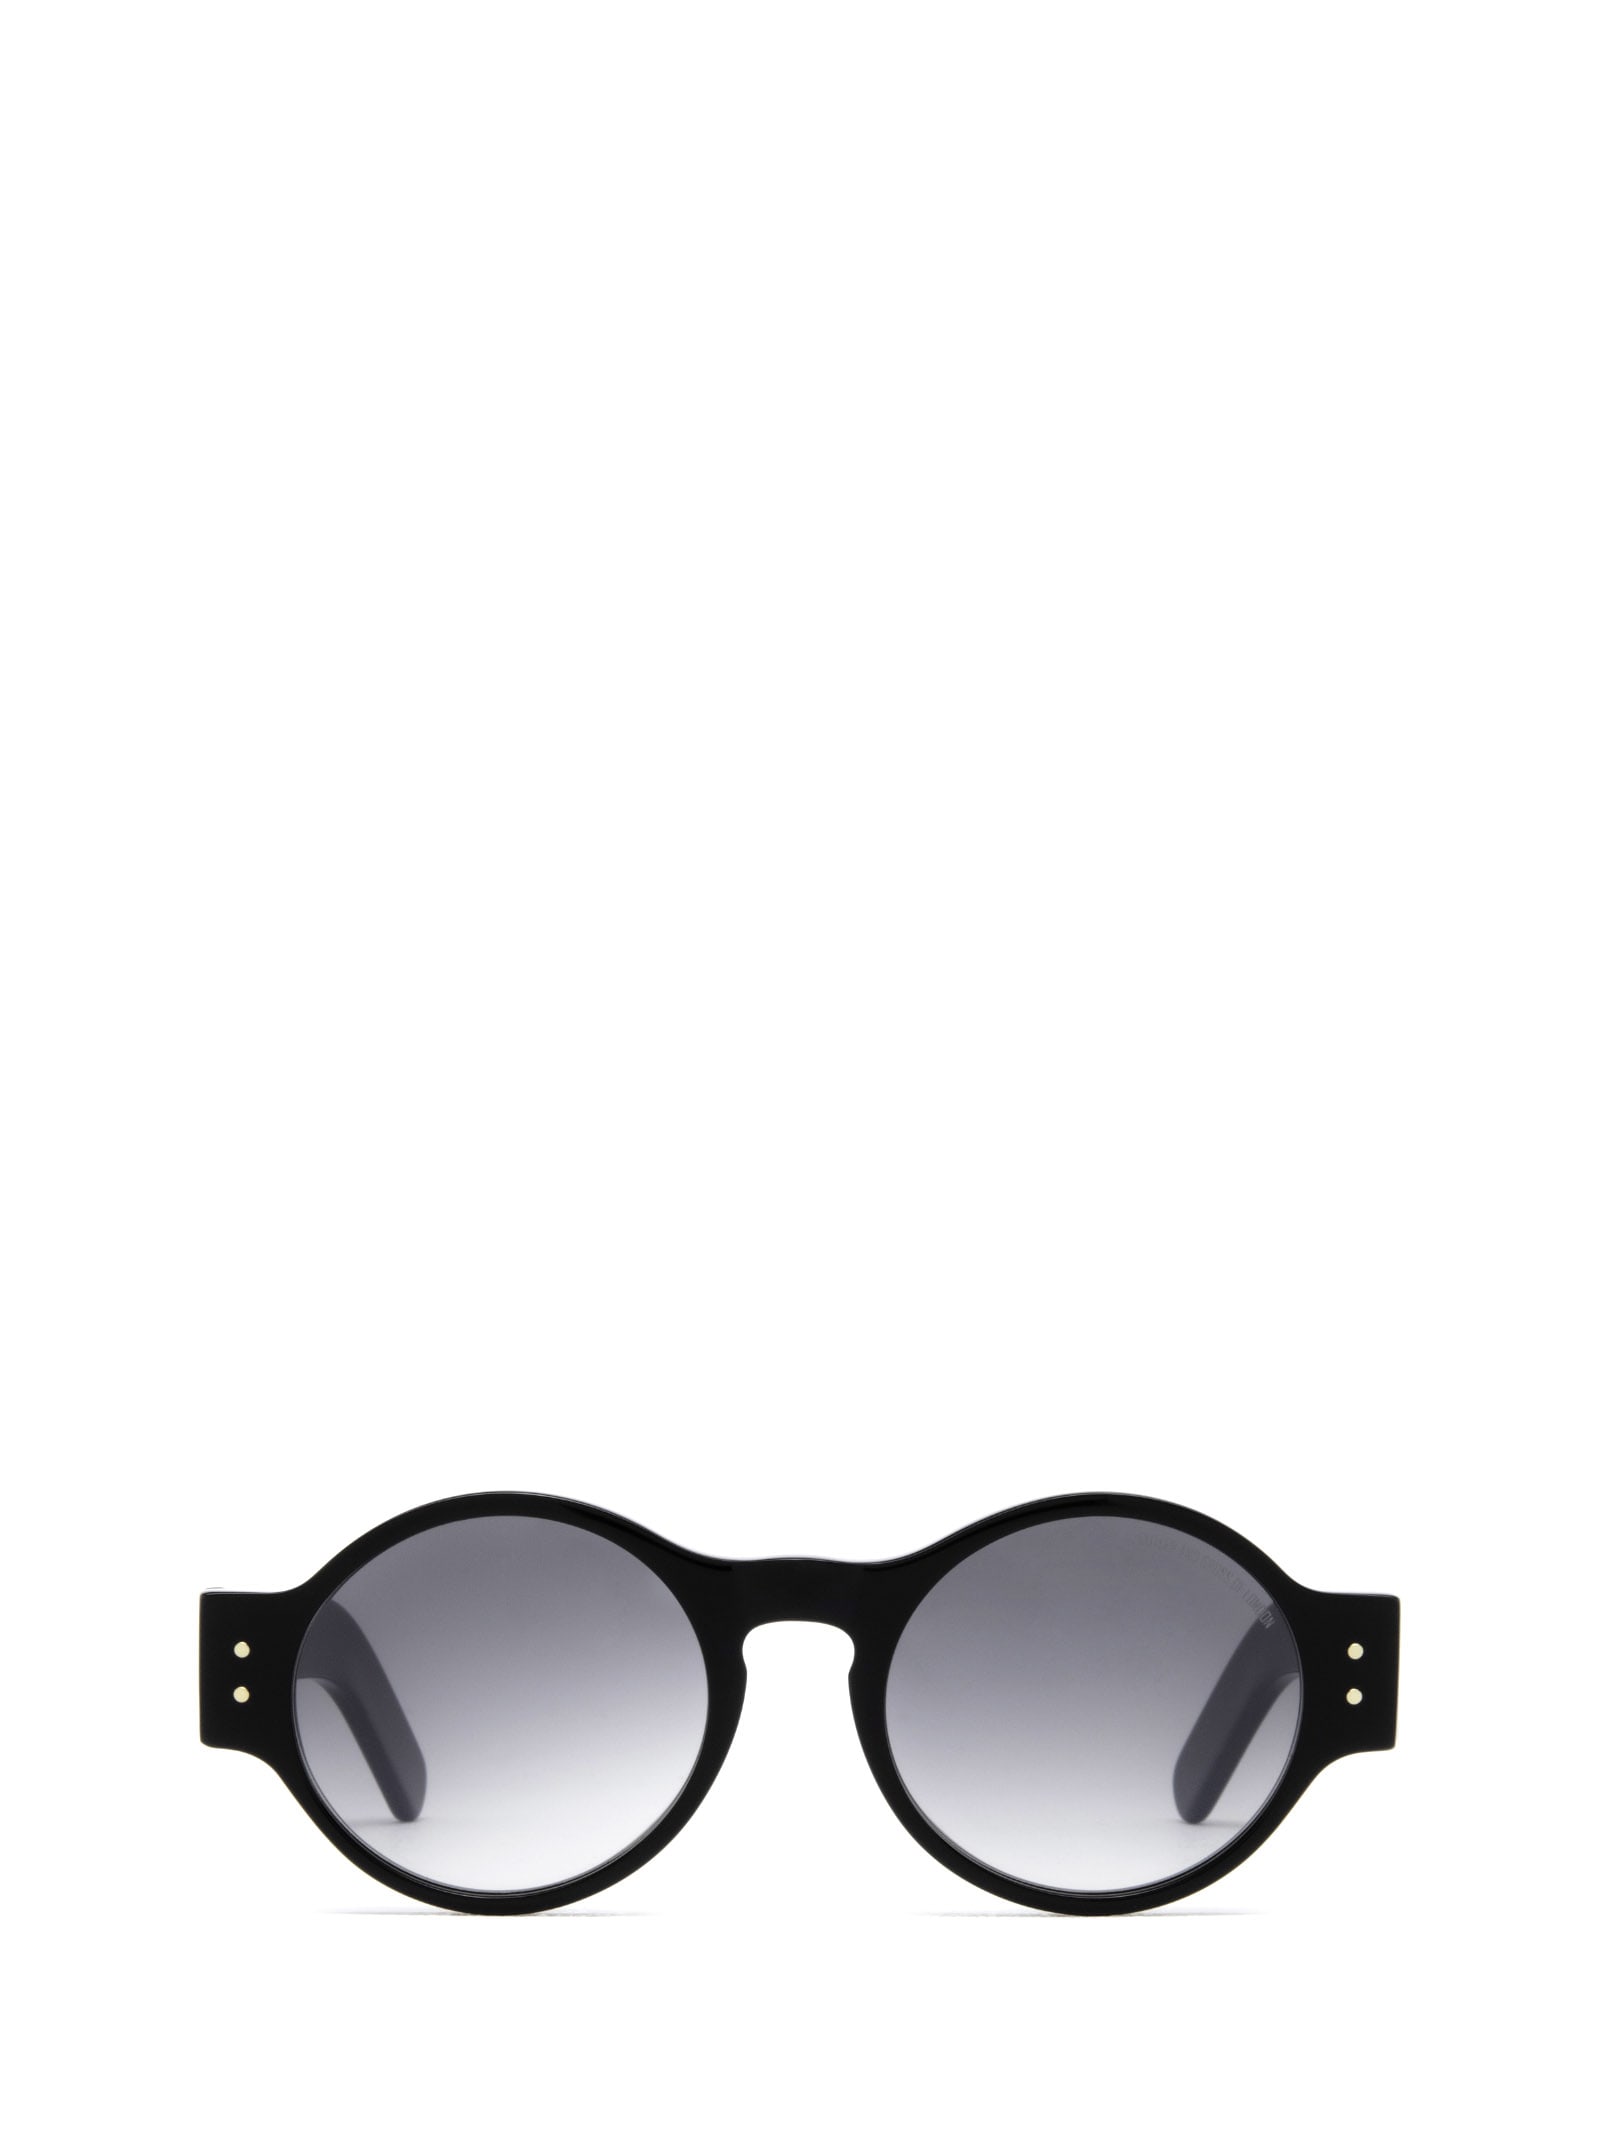 Cutler and Gross 1374 Sun Black Sunglasses